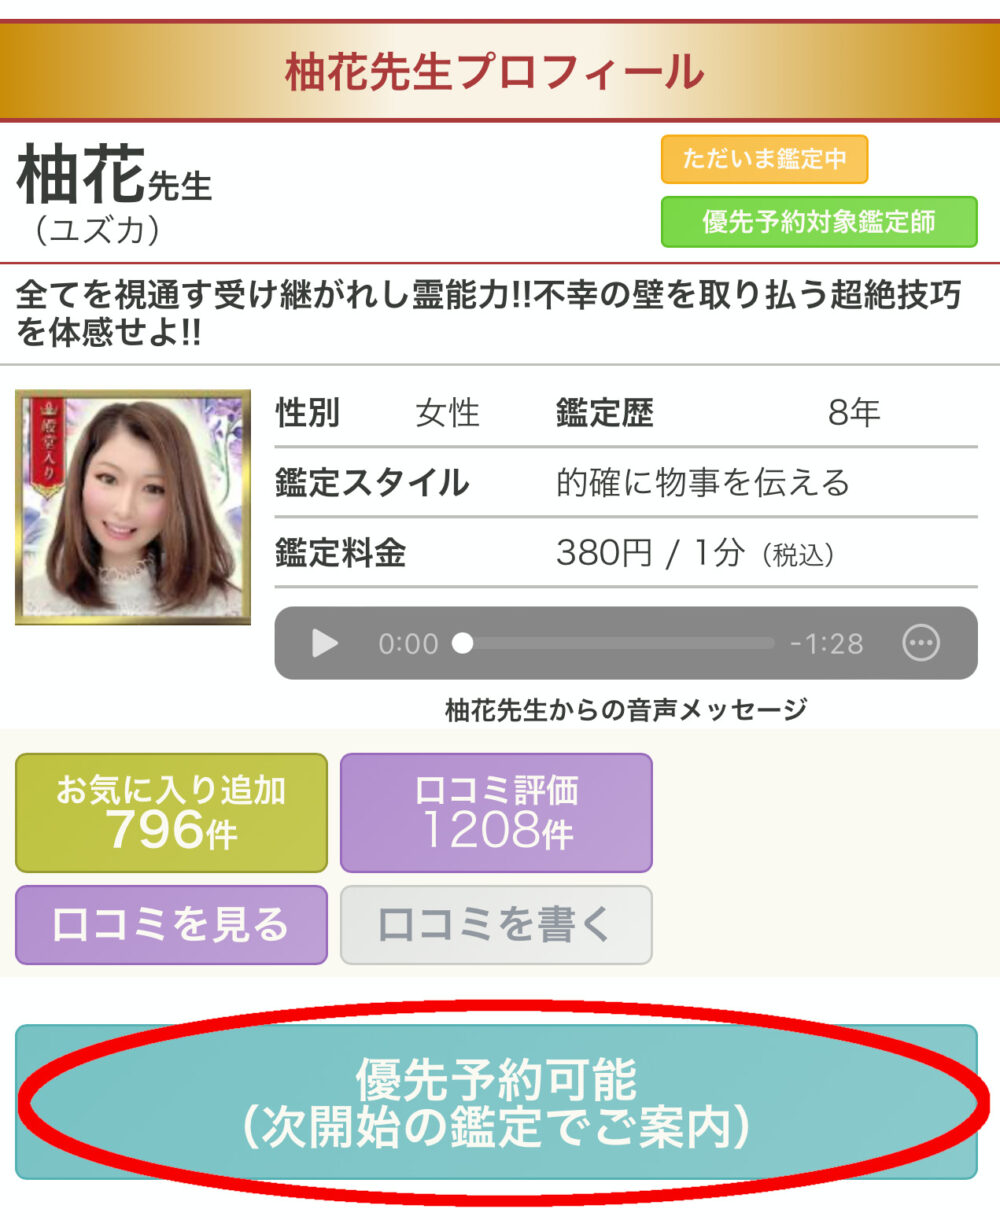 柚花先生のプロフィールページ